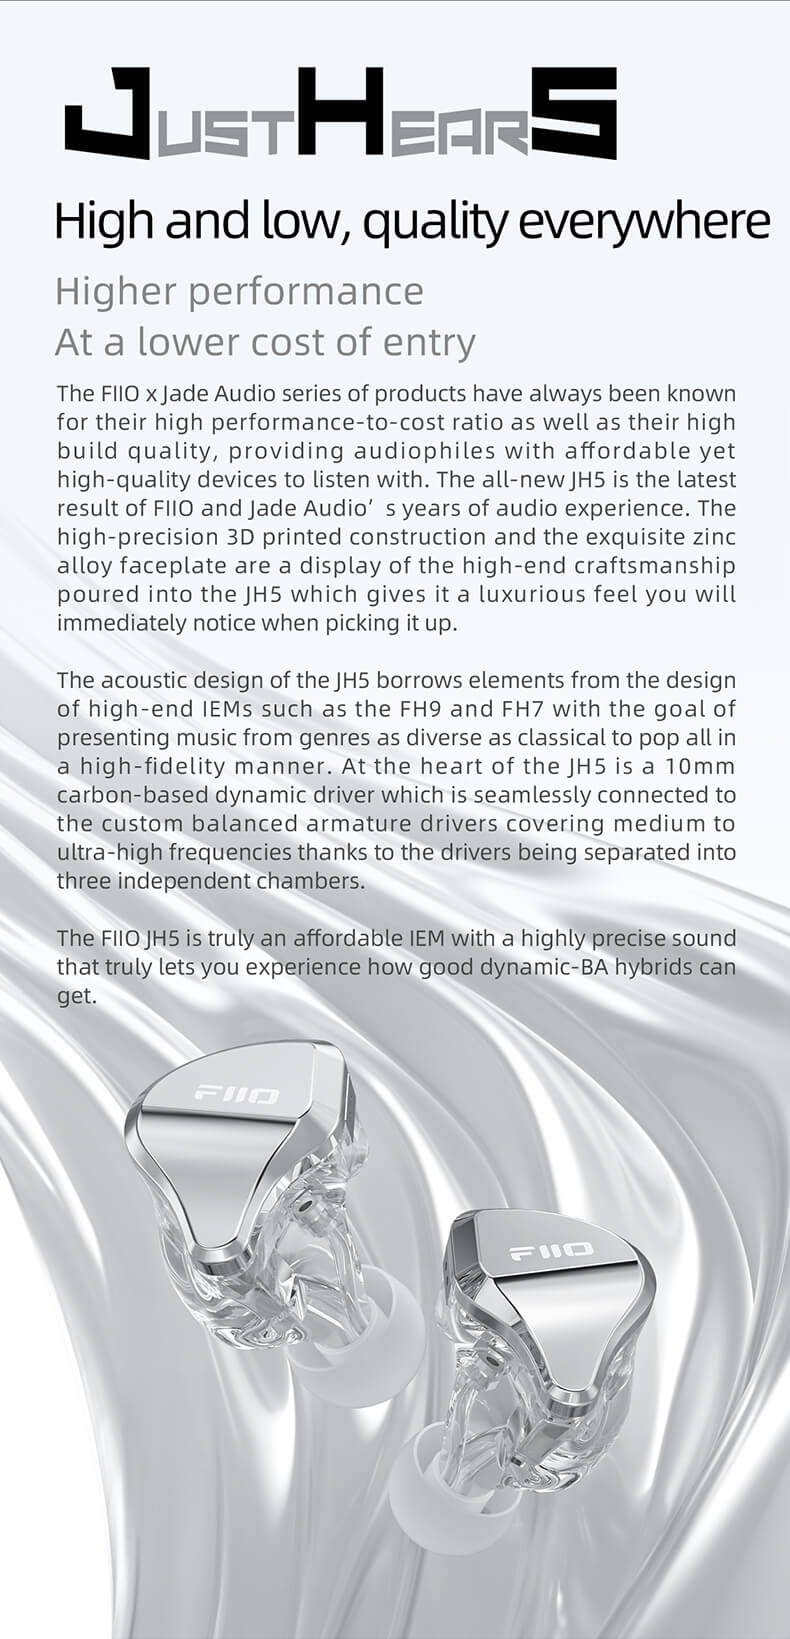 FiiO JH5 | La série de produits FiiO x Jade Audio a toujours été connue pour son rapport performance/coût élevé ainsi que pour sa grande qualité de fabrication, offrant aux audiophiles des appareils abordables mais de haute qualité. Le tout nouveau JH5 est le dernier résultat des années d'expérience audio de FiiO et Jade Audio. La construction de haute précision imprimée en 3D et la plaque frontale en alliage de zinc exquis témoignent du savoir-faire artisanal haut de gamme dont bénéficie le JH5 et qui lui confère une sensation de luxe que vous remarquerez immédiatement lorsque vous le prendrez en main.